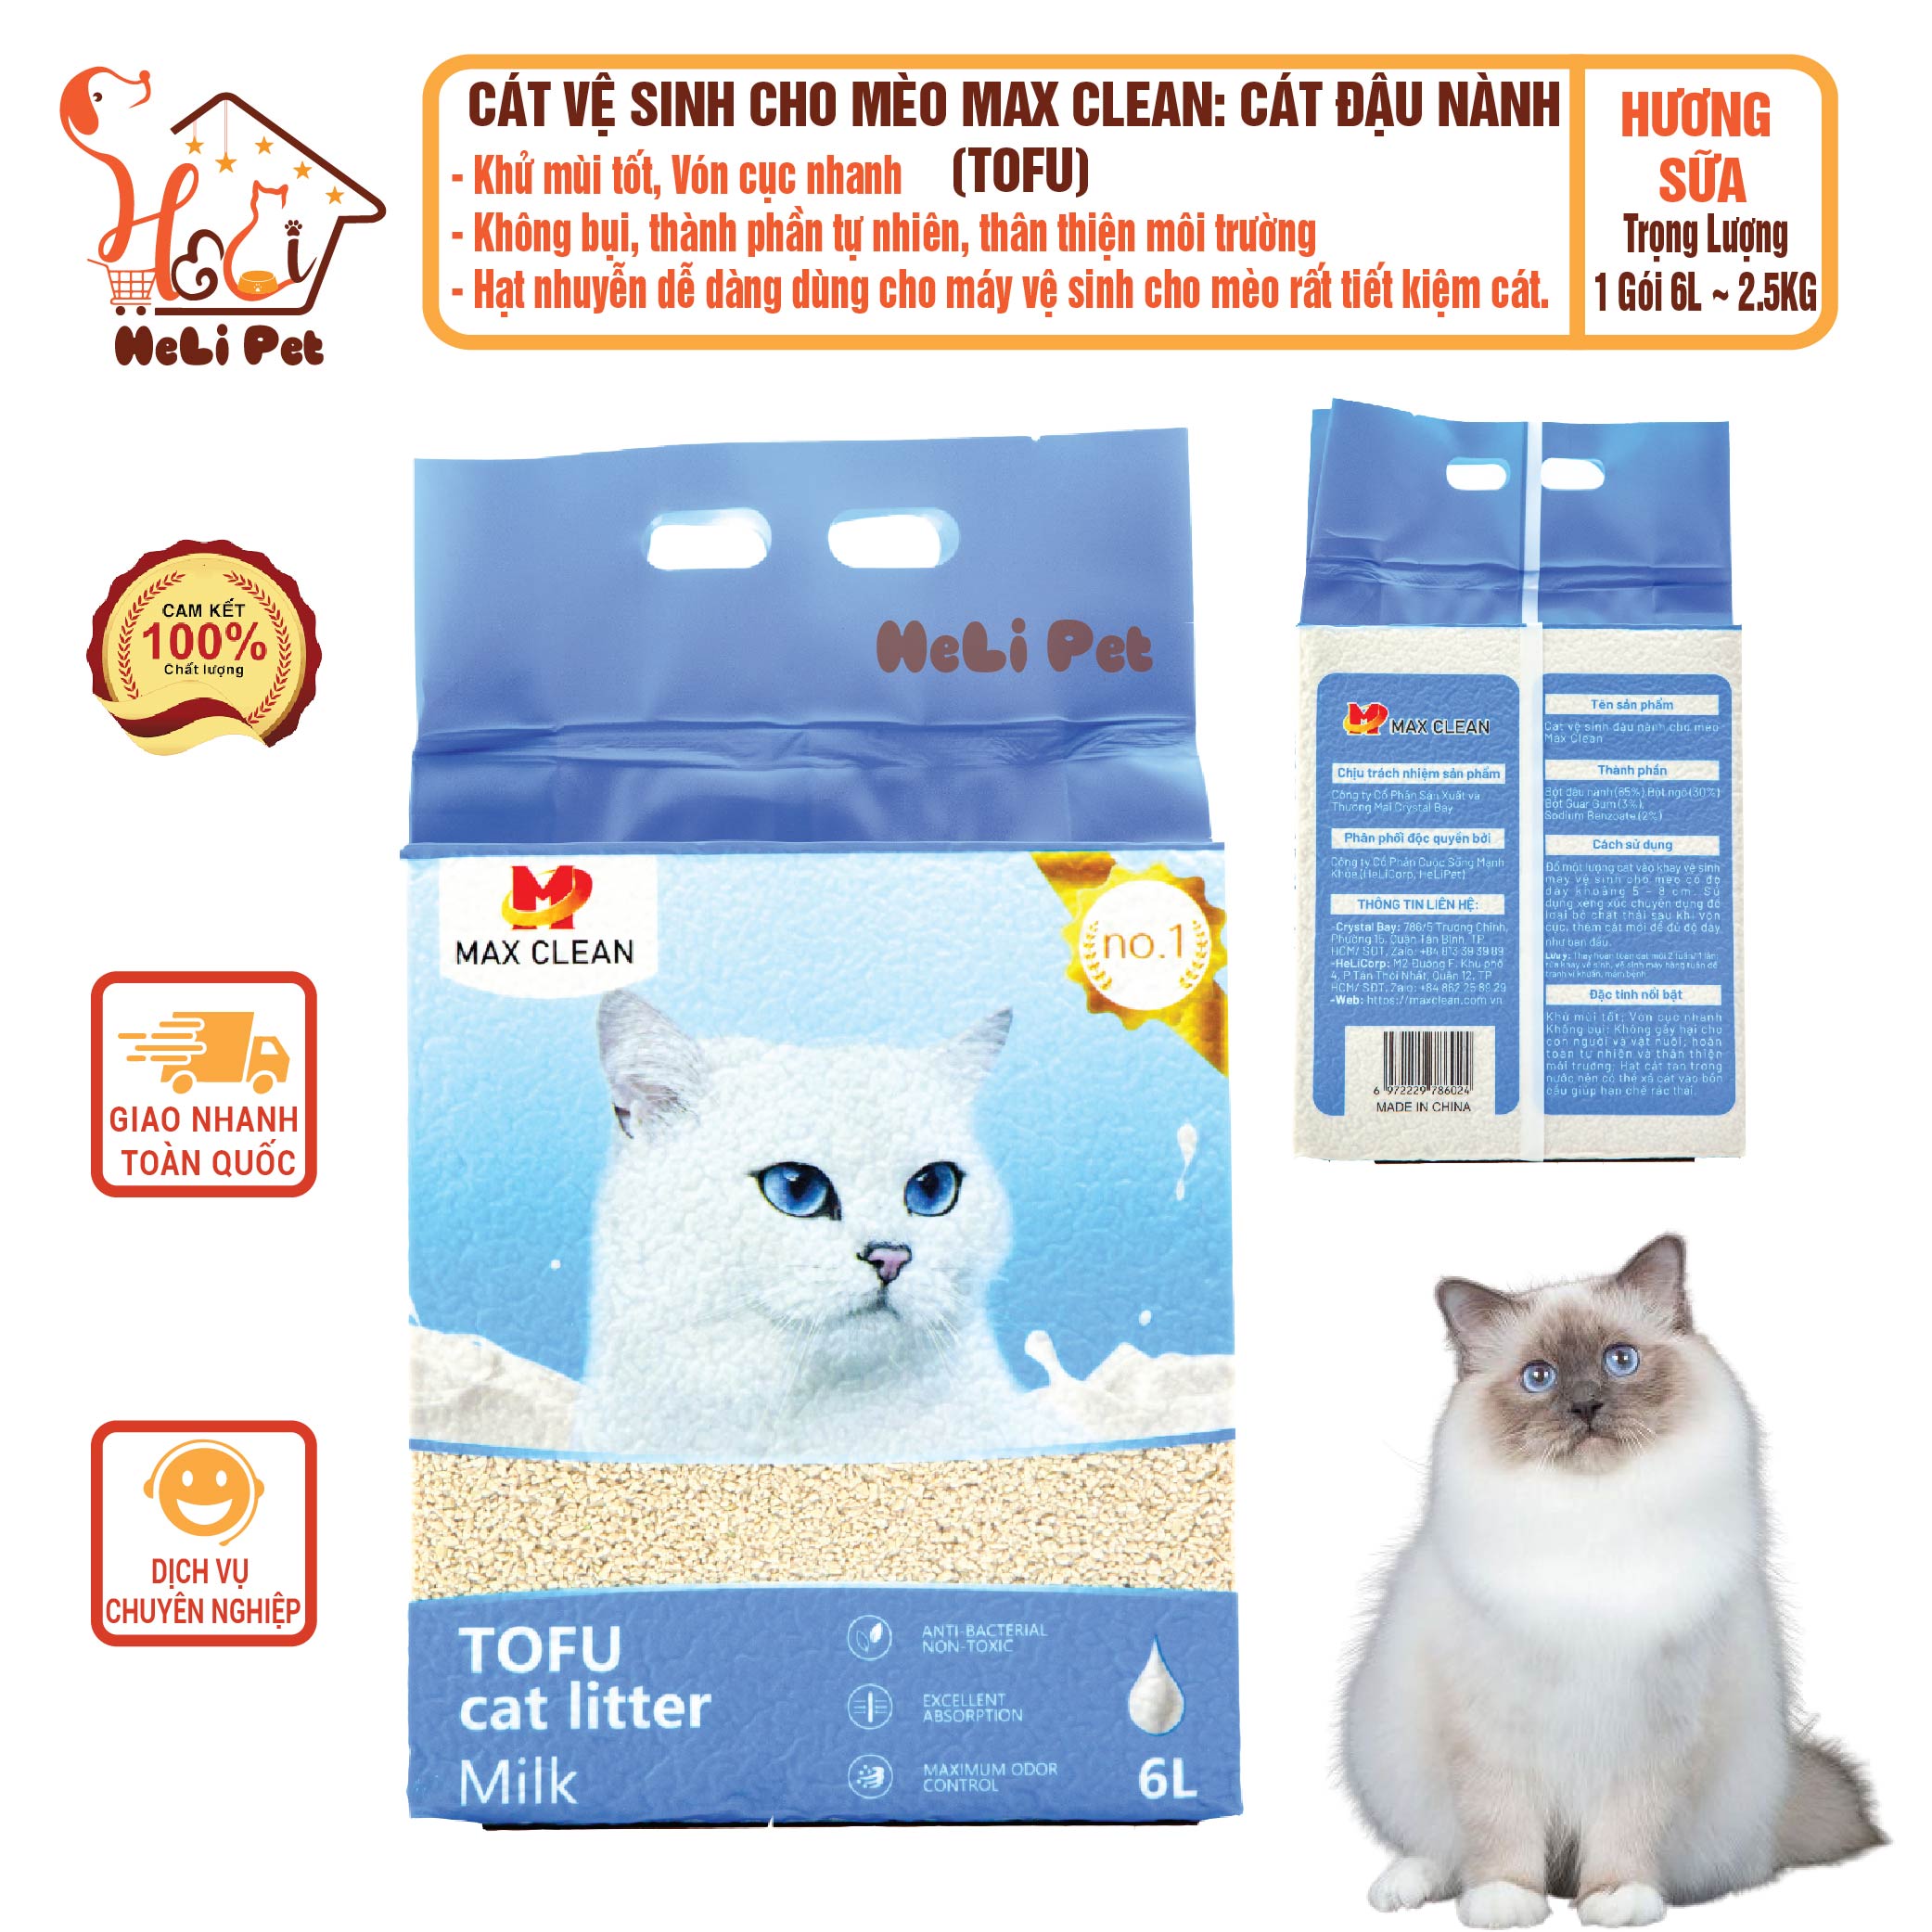 Cát Đậu Nành Max Clean HƯƠNG SỮA Cát Vệ Sinh Cao Cấp Cho Mèo Siêu Vón Cục Không Bụi, Tan Trong Nước- HeLiPet